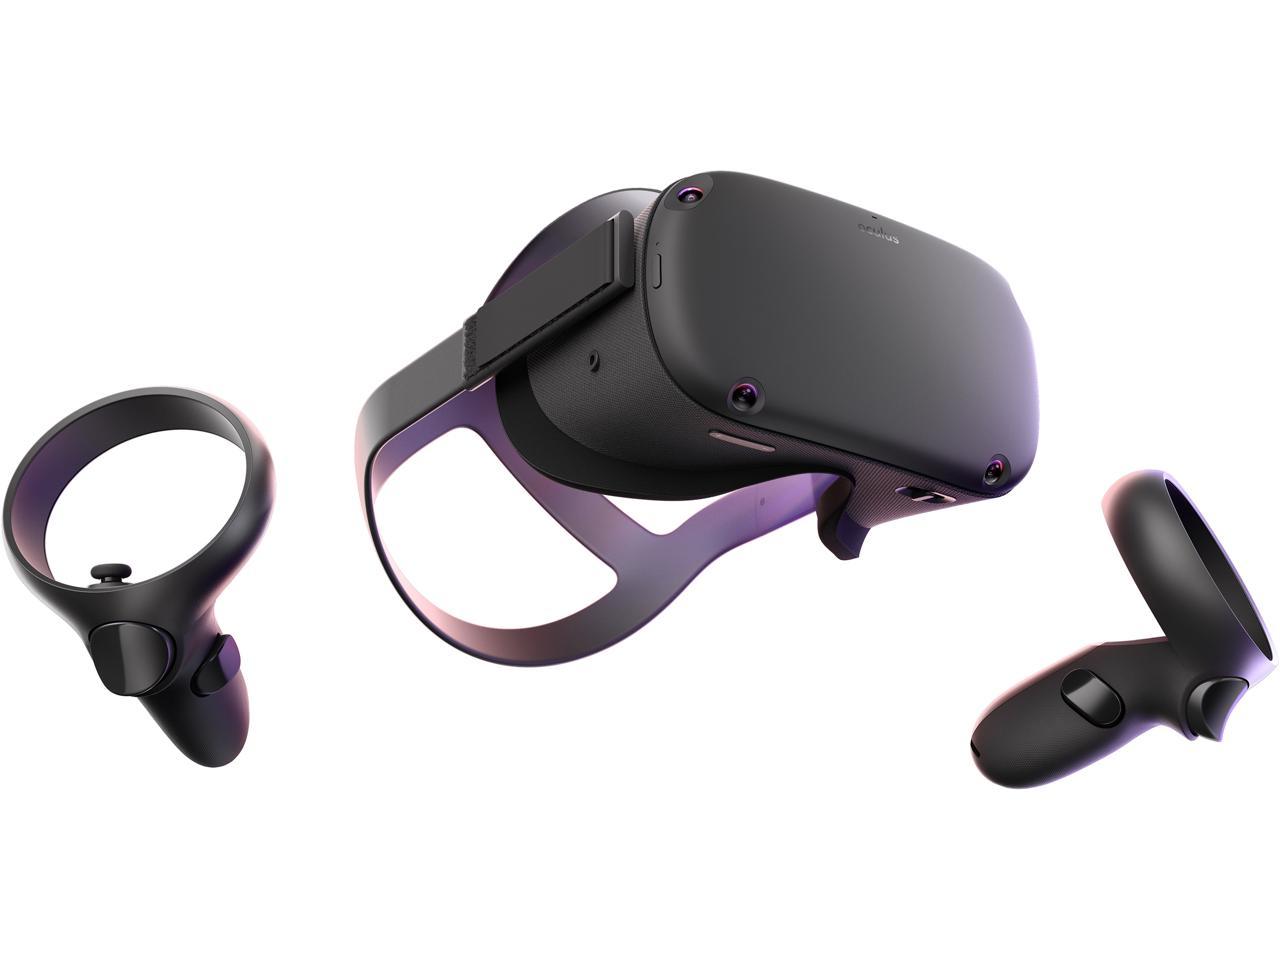 oculus rift virtual reality headset